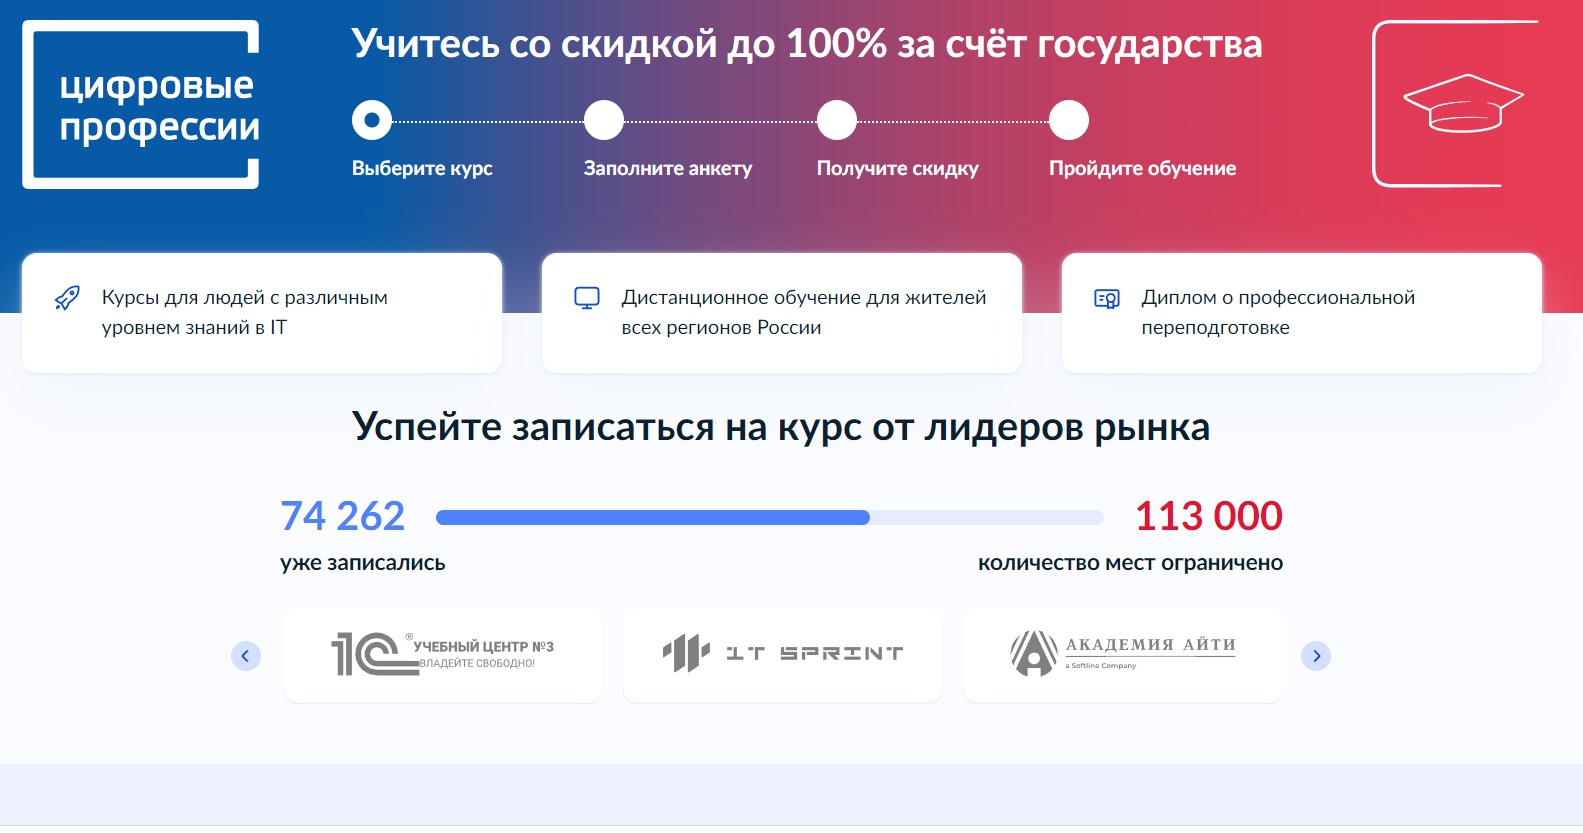 Получить цифровую профессию бесплатно за счет государства приглашают жителей Челябинской области